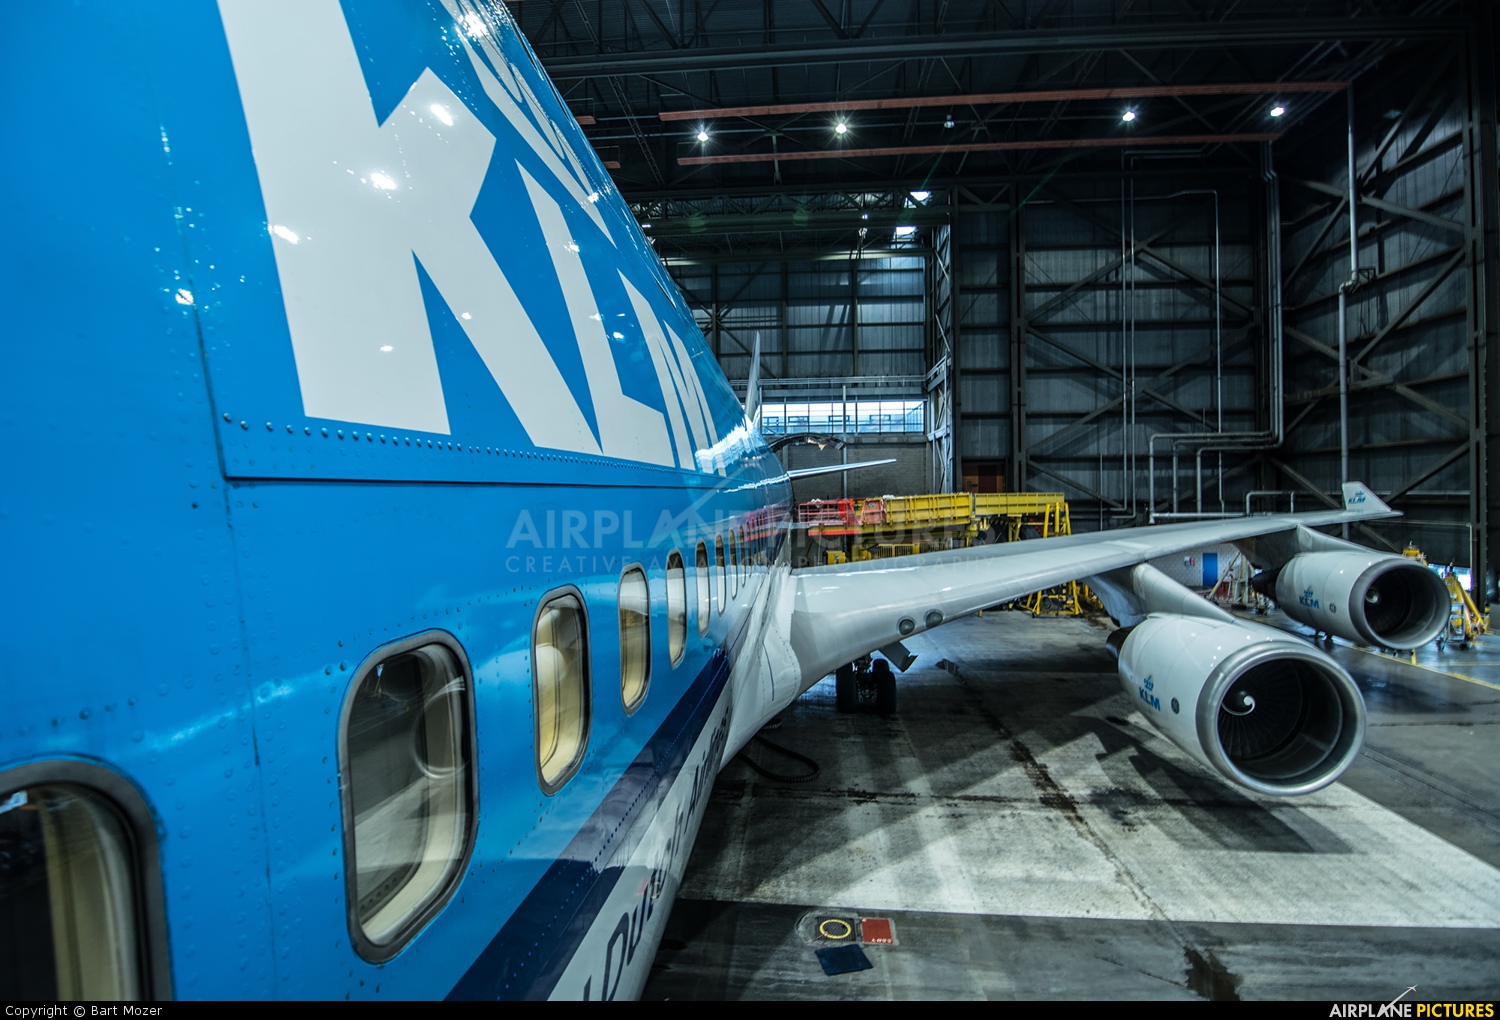 KLM PH-BFK aircraft at Amsterdam - Schiphol